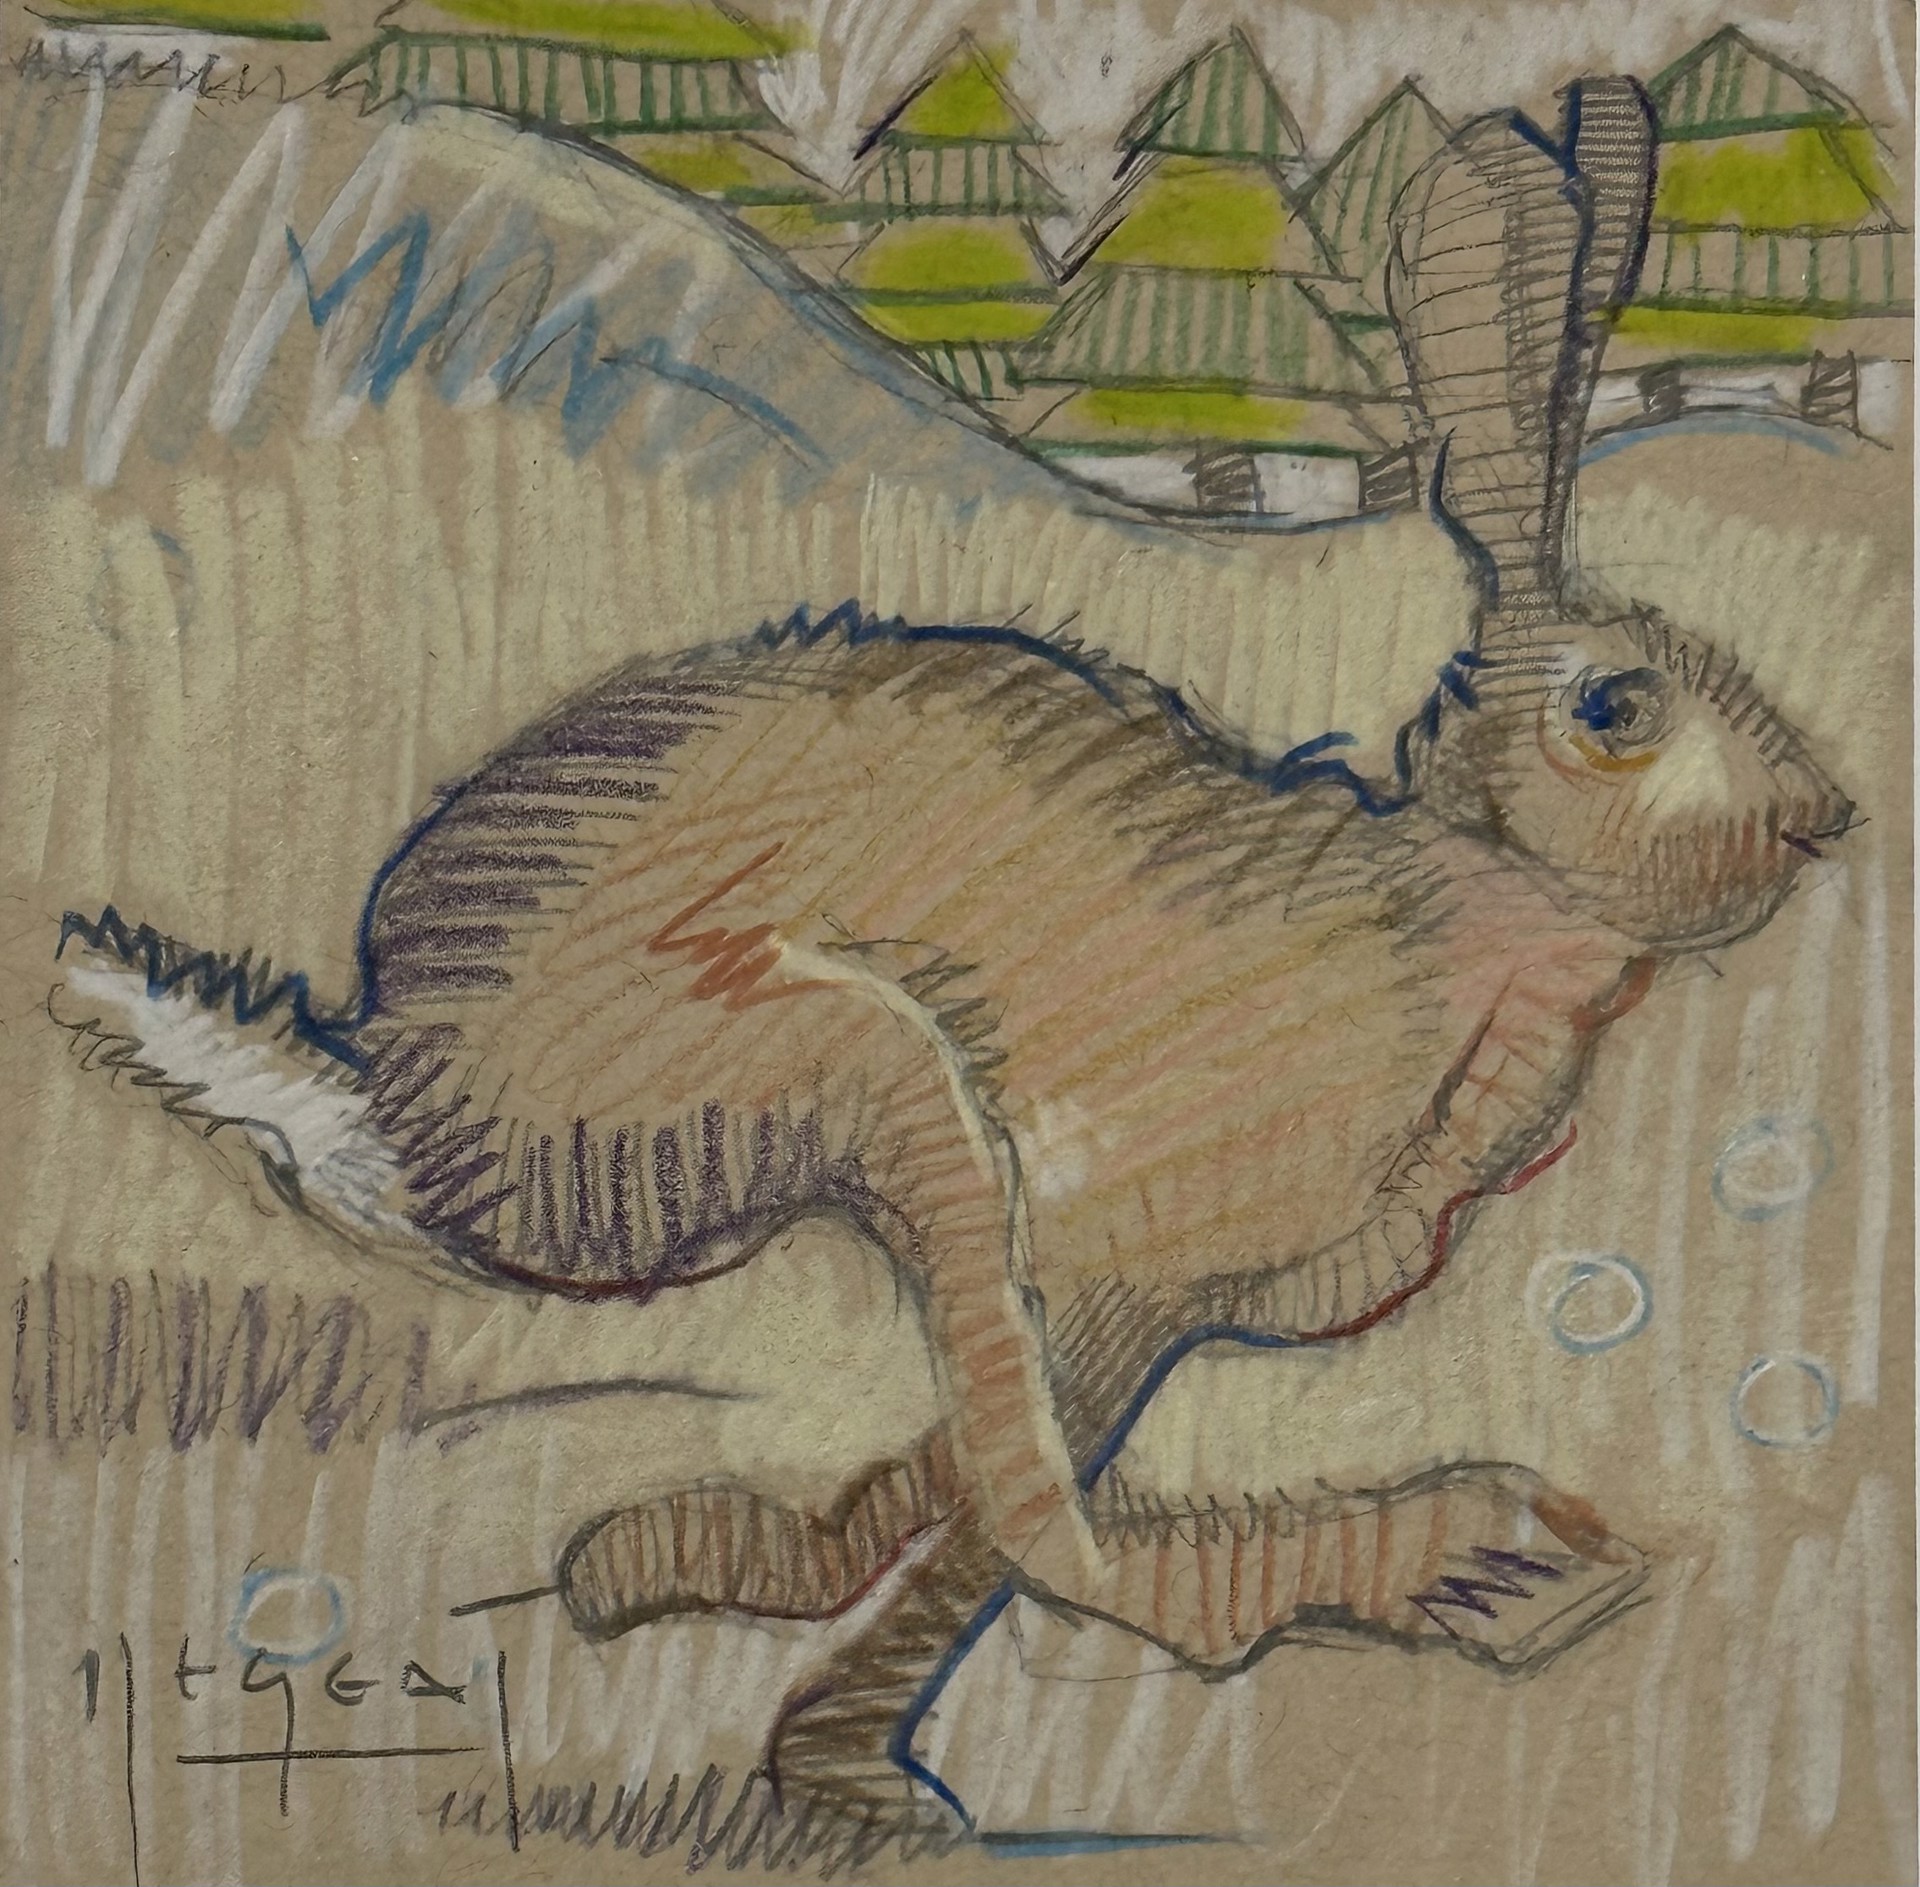 Mini Farm: Rabbit by Tim Jaeger